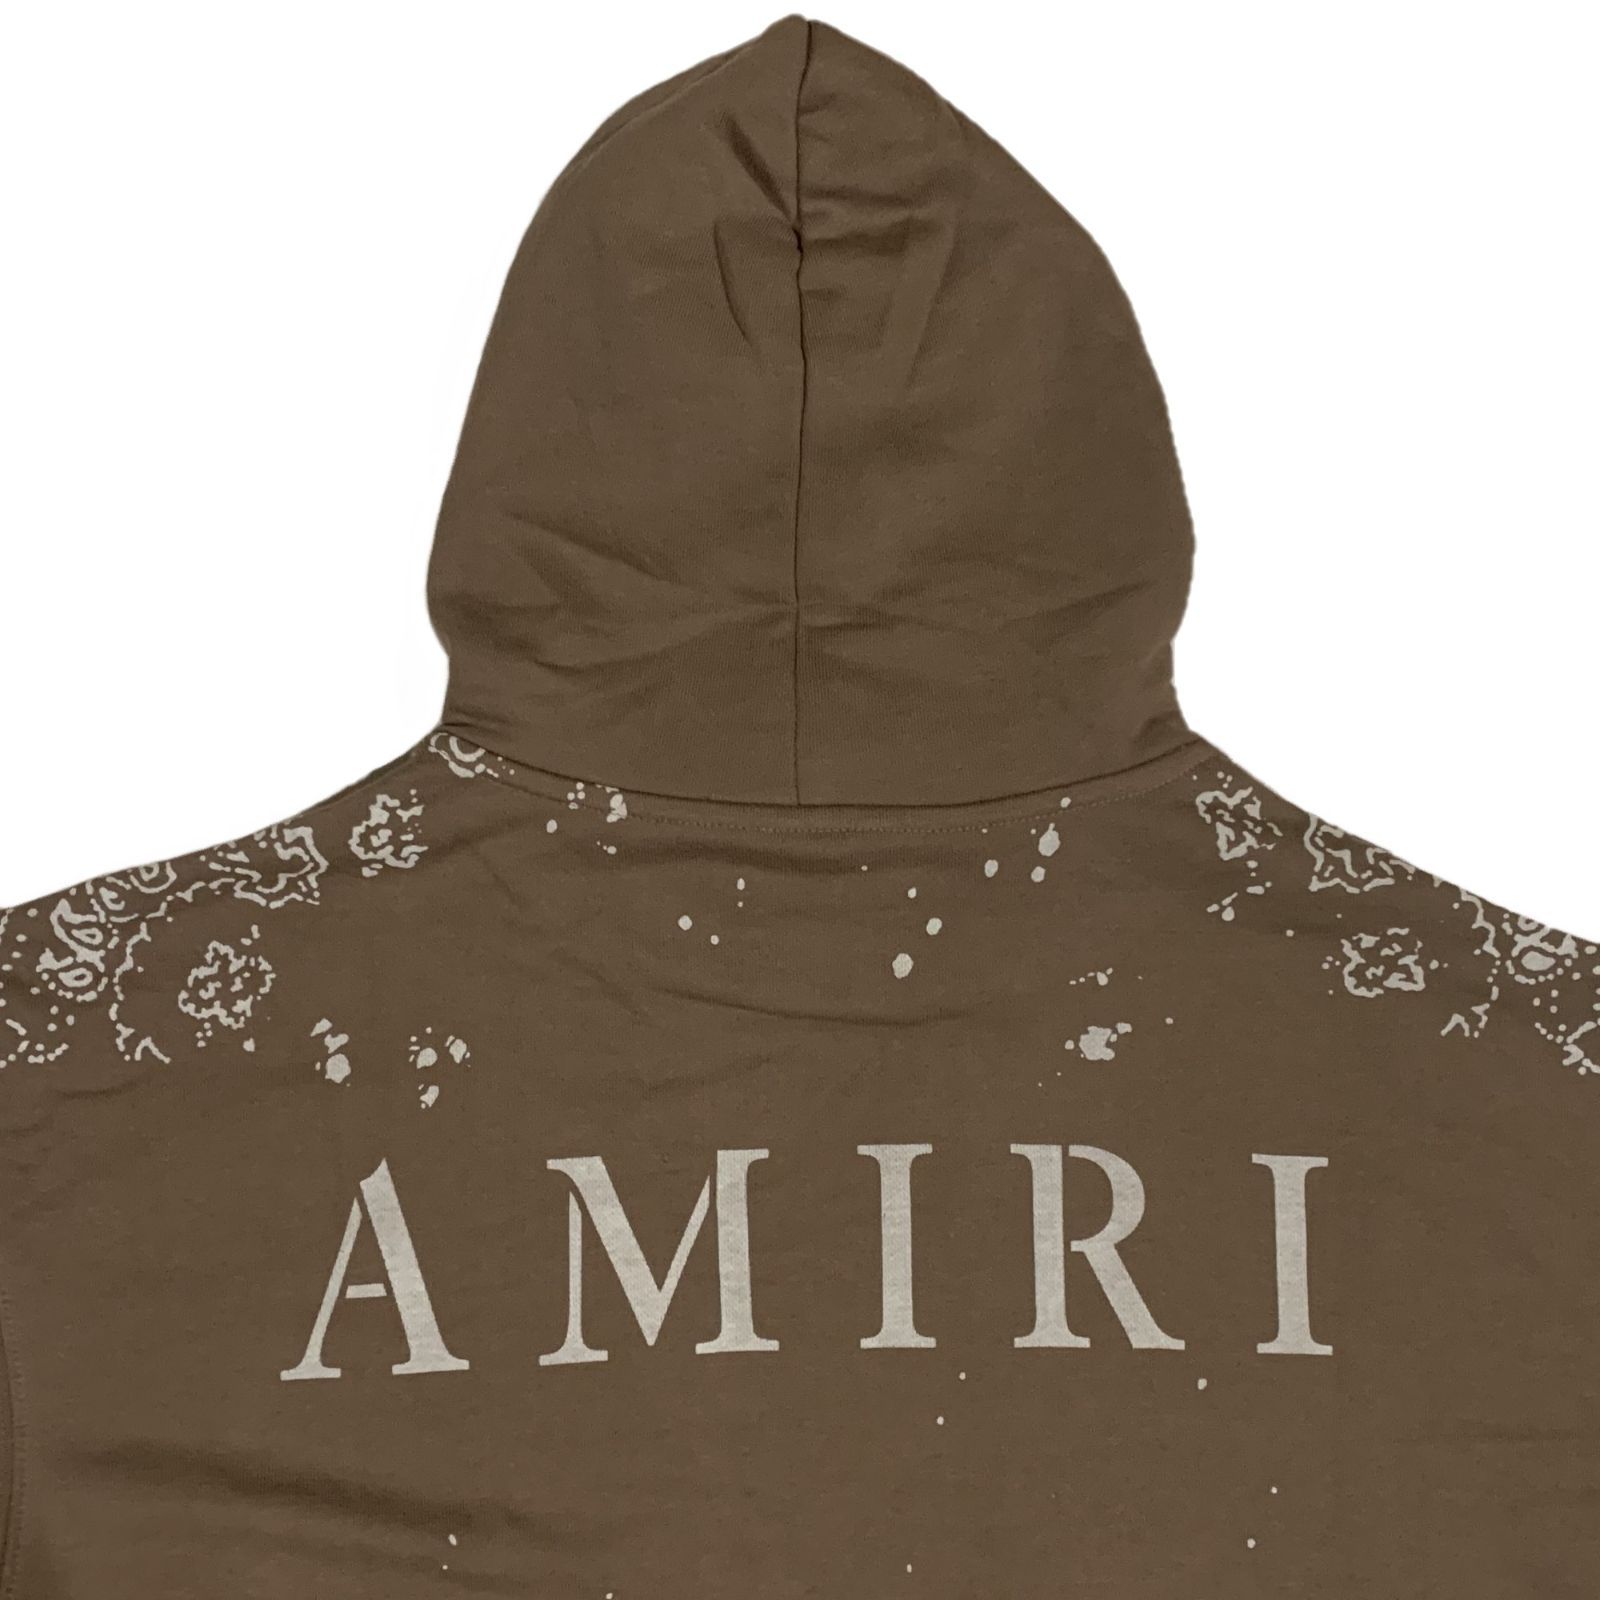 AMIRI アミリ ARMY LOGO 迷彩柄 カモ プルオーバーパーカー XL袖丈長袖